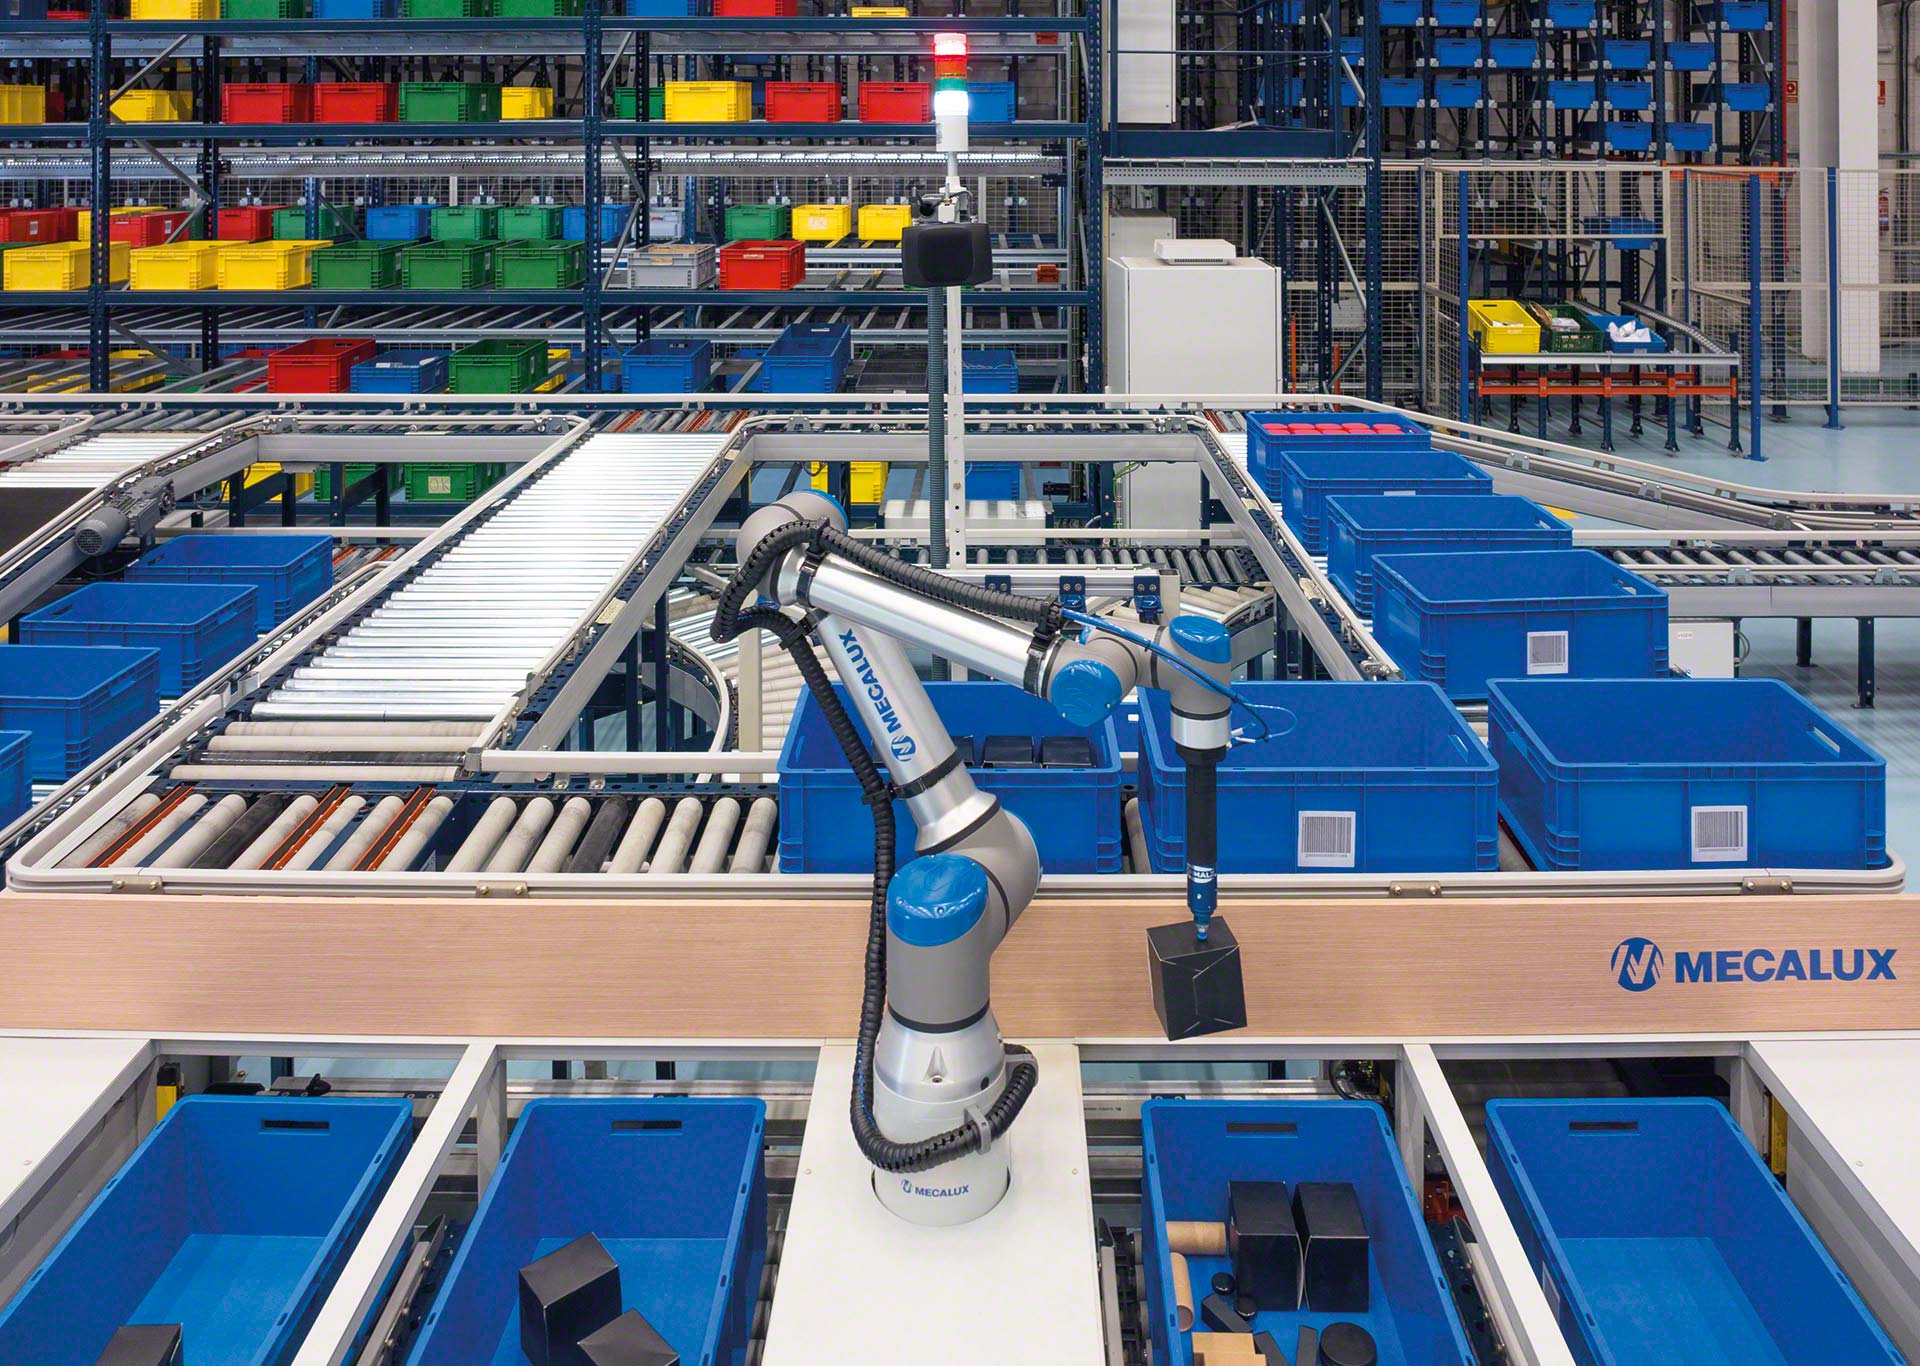 Mecalux bringt ein Robotersystem zur Kommissionierung mit der KI-Technologie von Siemens heraus